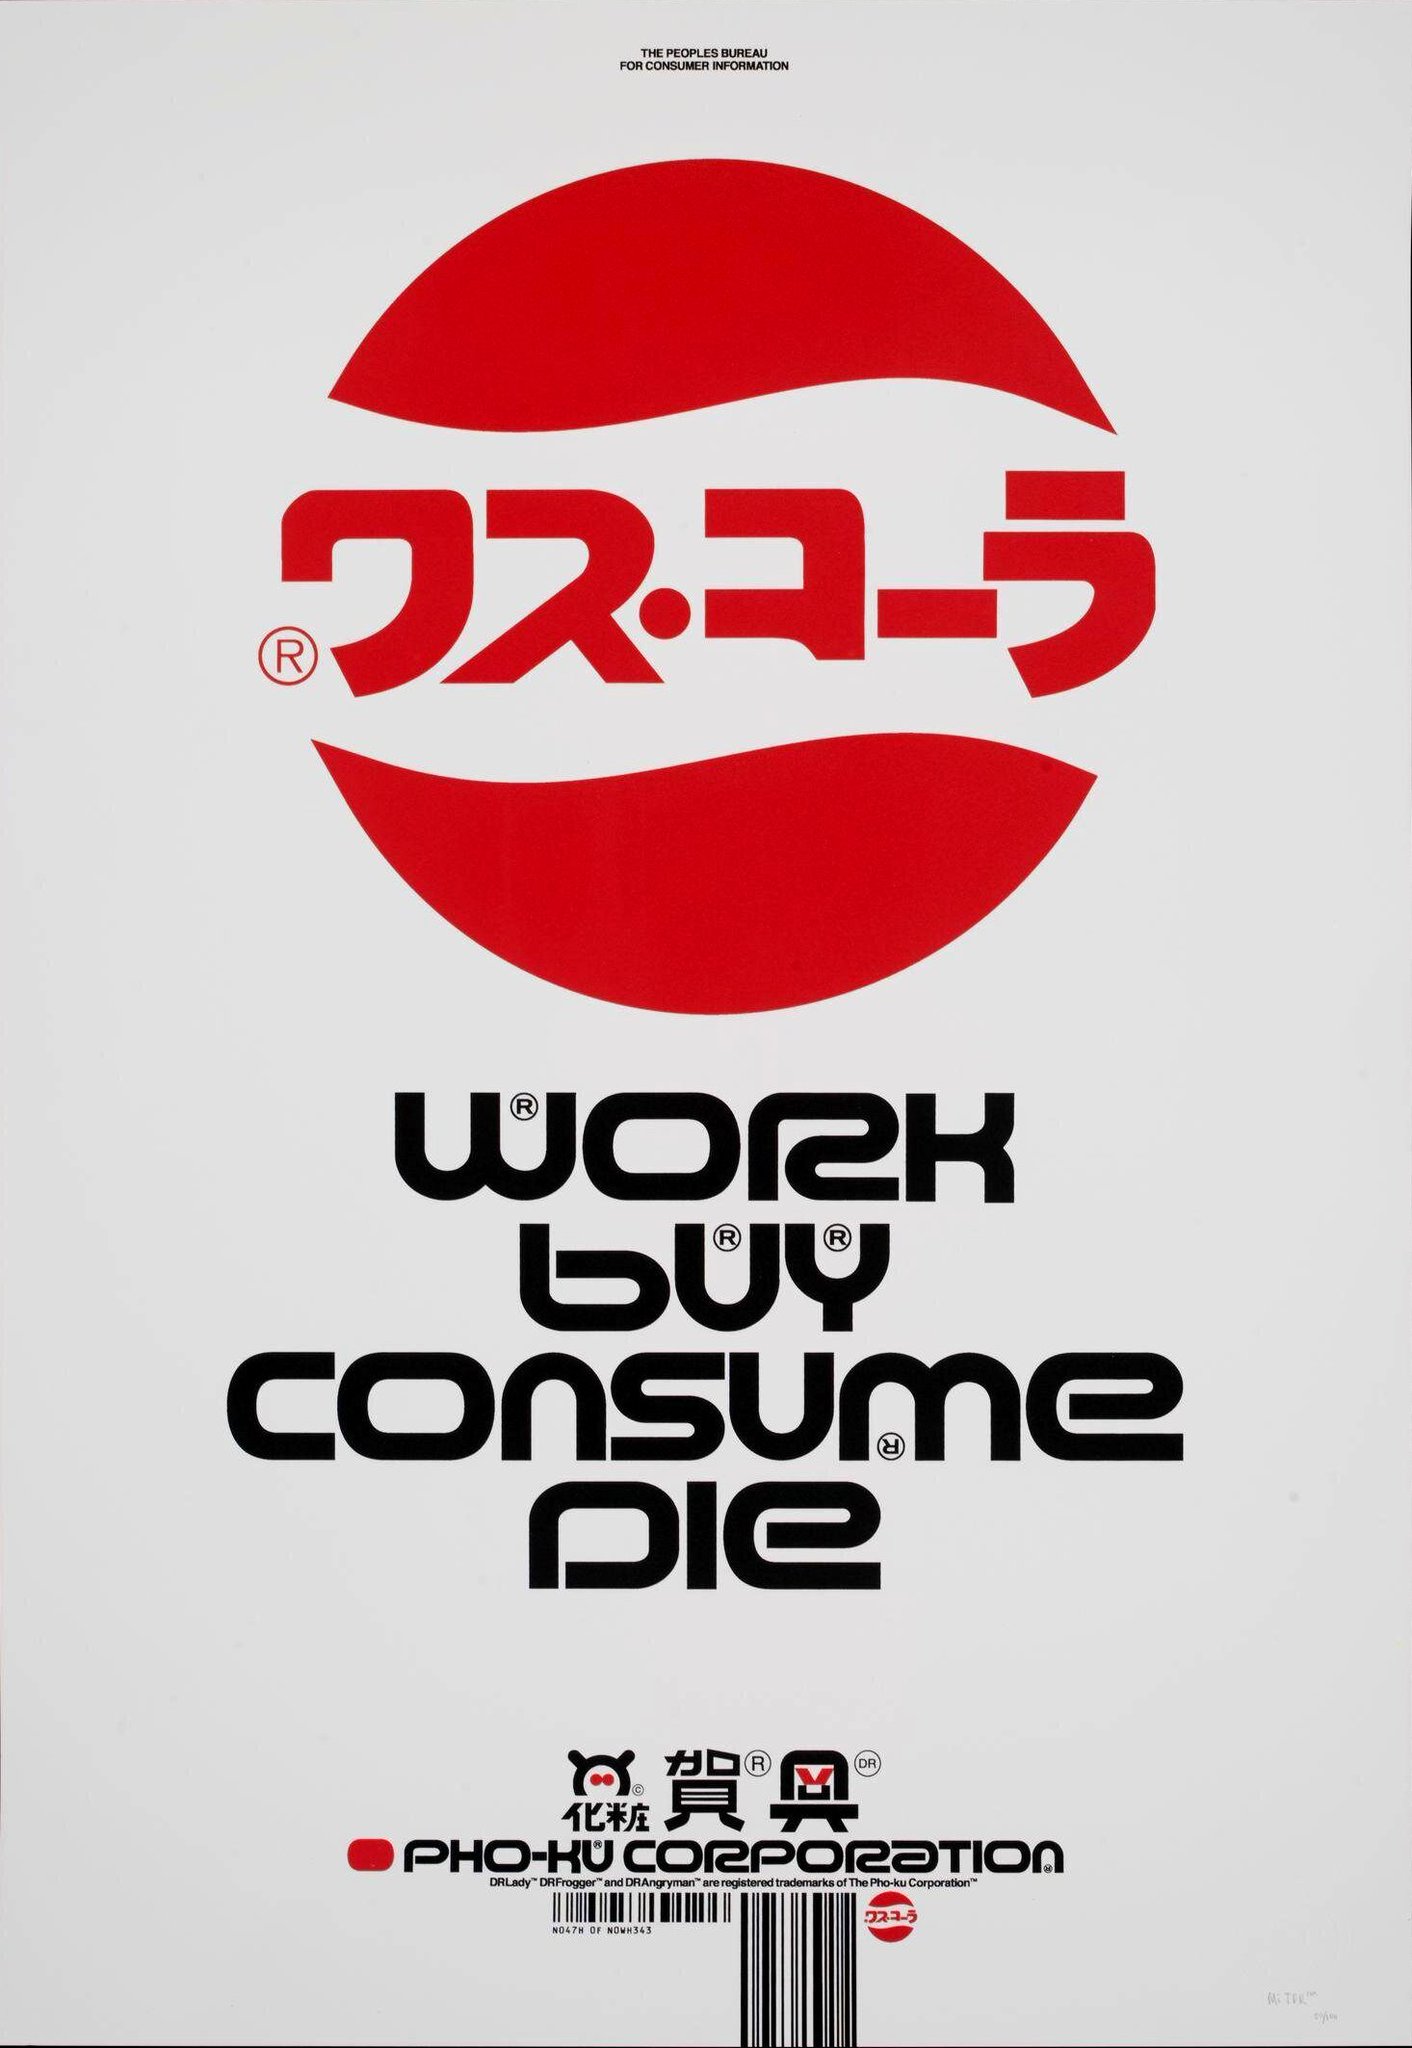 Work Buy Consume Die, The Designers Republic, 1994